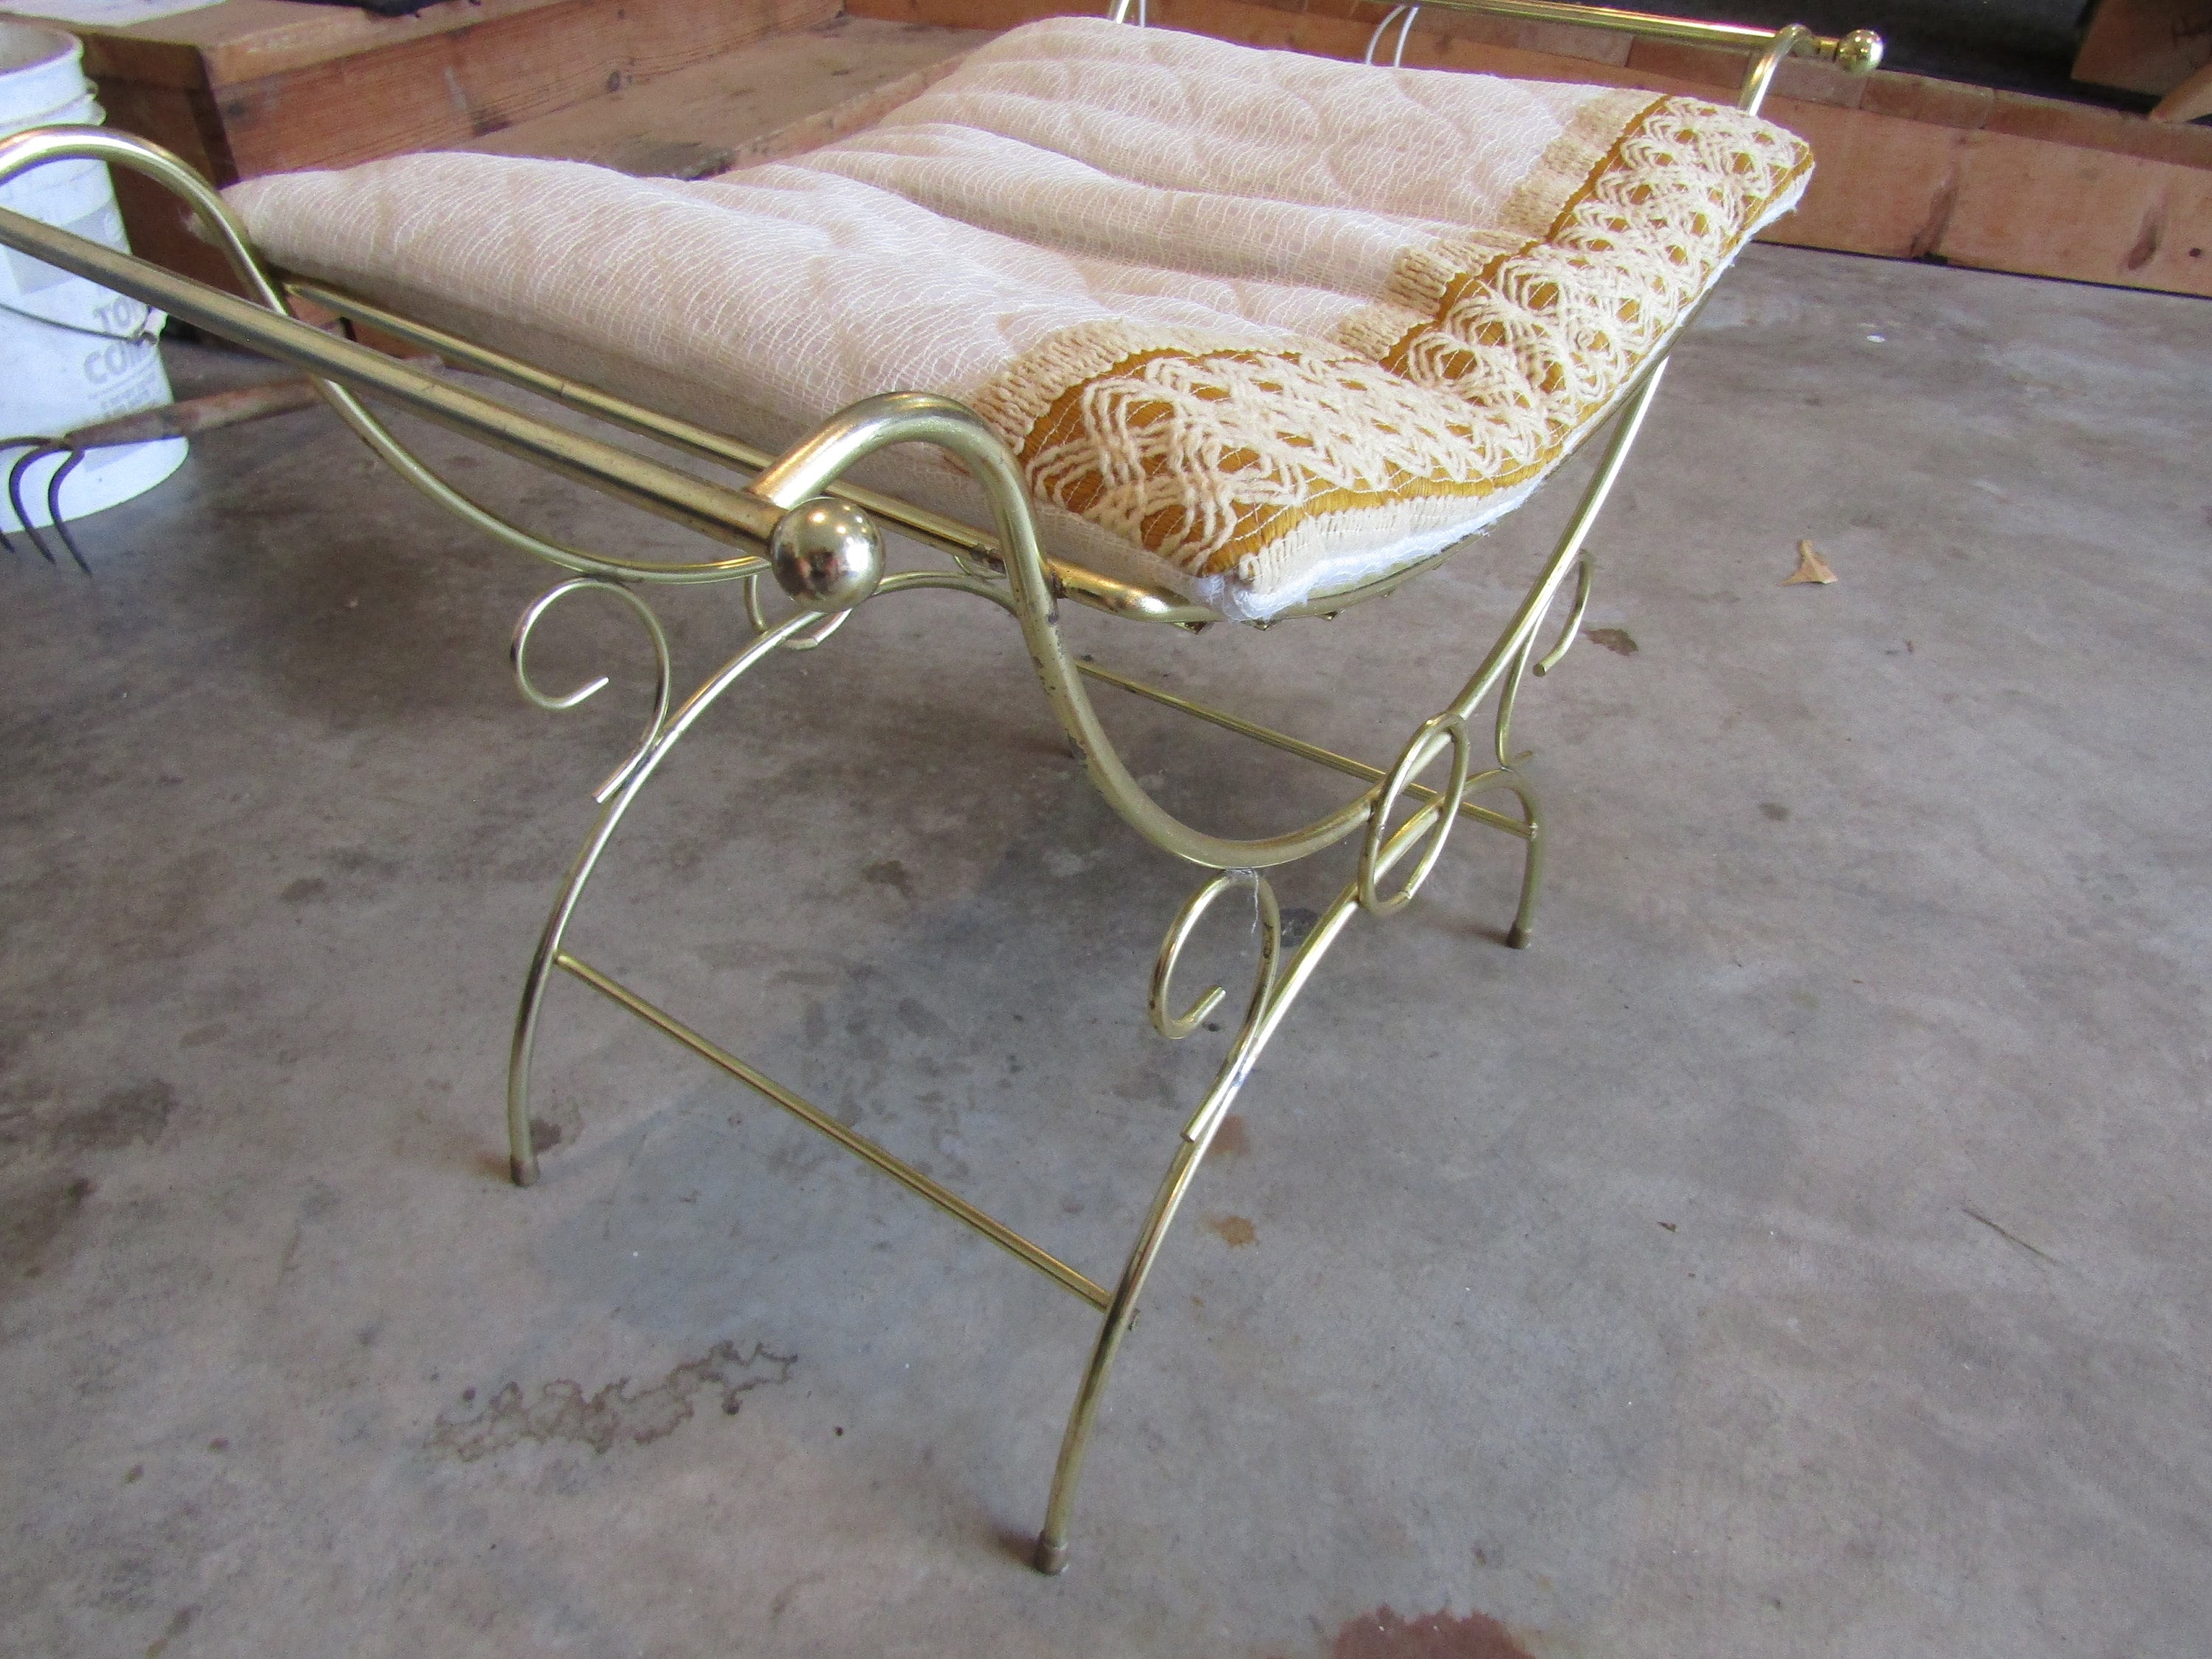 Vtg ottoman foot stool Poof Chair Gold Tassel Fringe HOLLYWOOD Regency